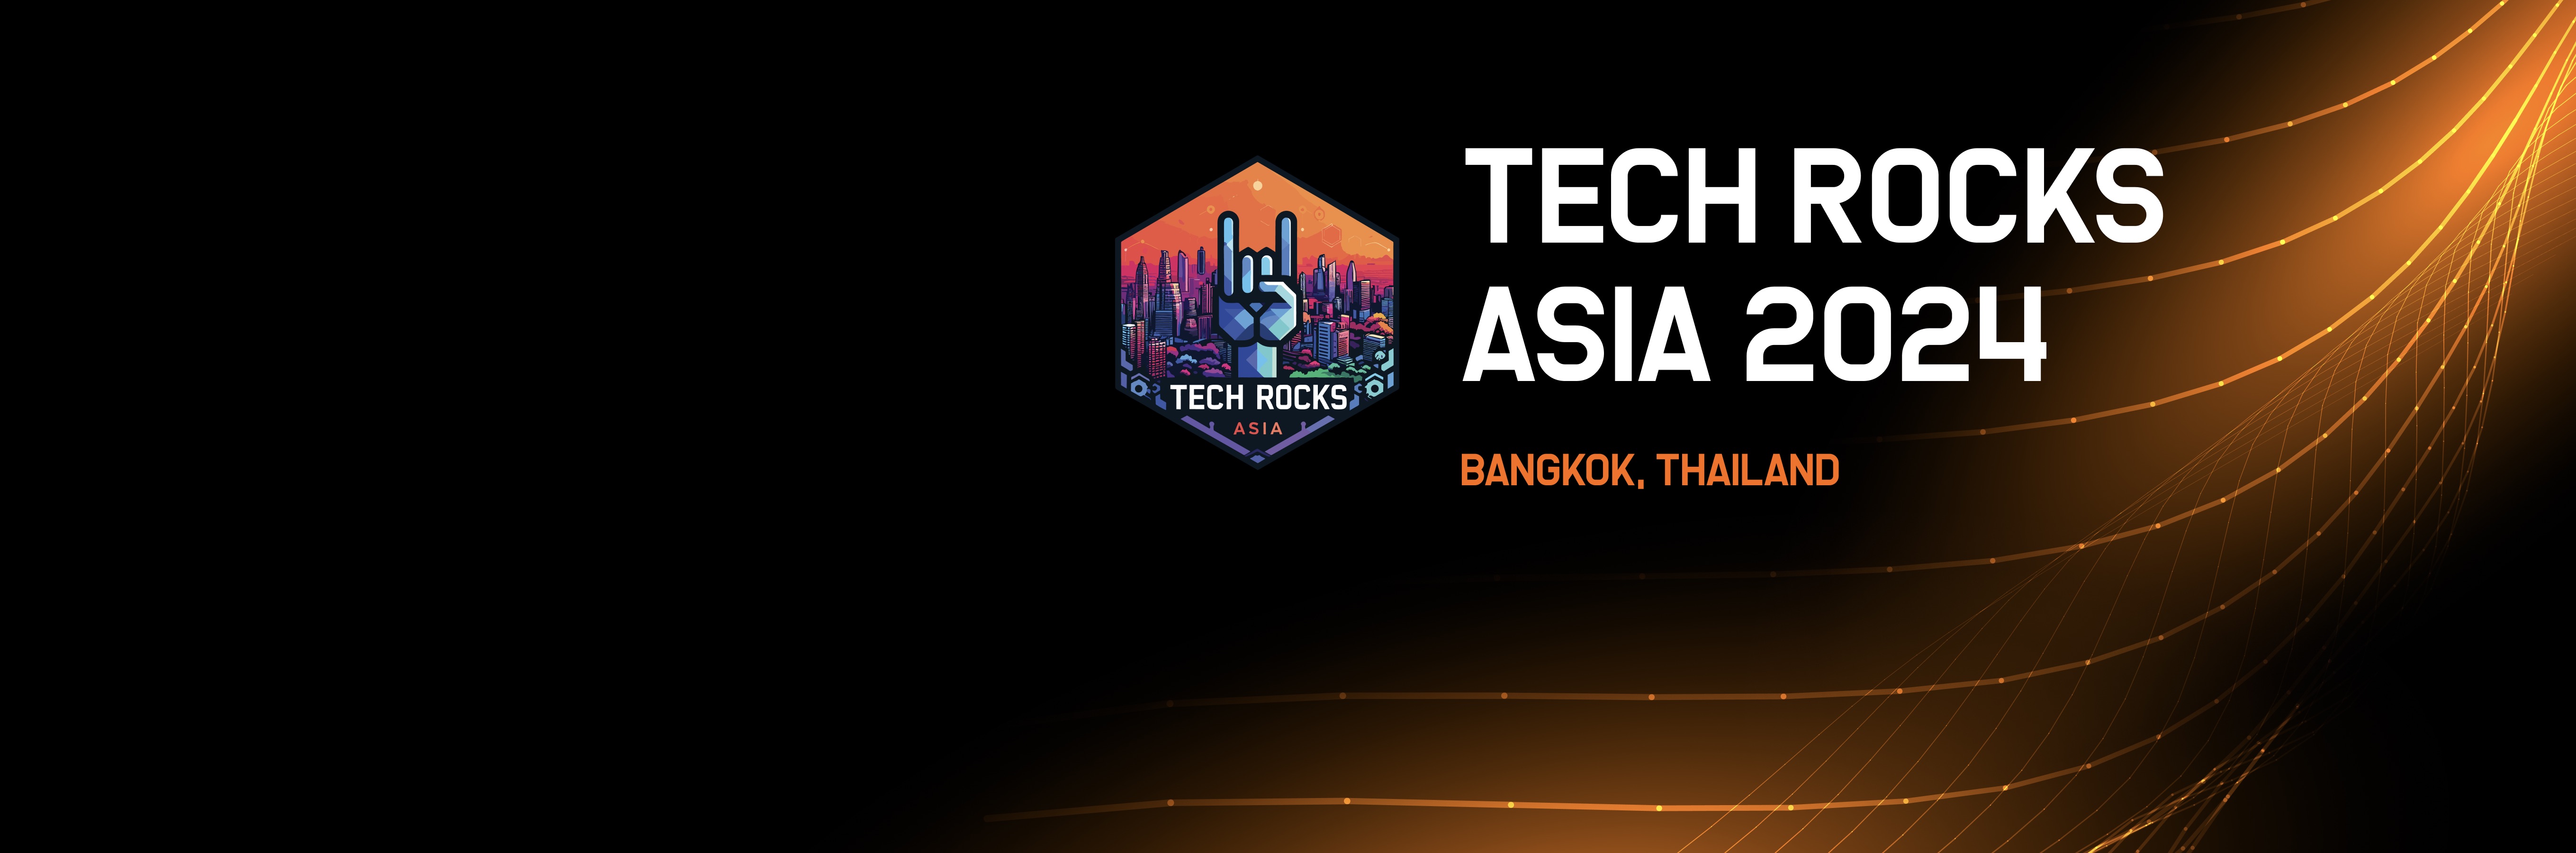 Tech Rocks Asia 2024, Bangkok, Thailand